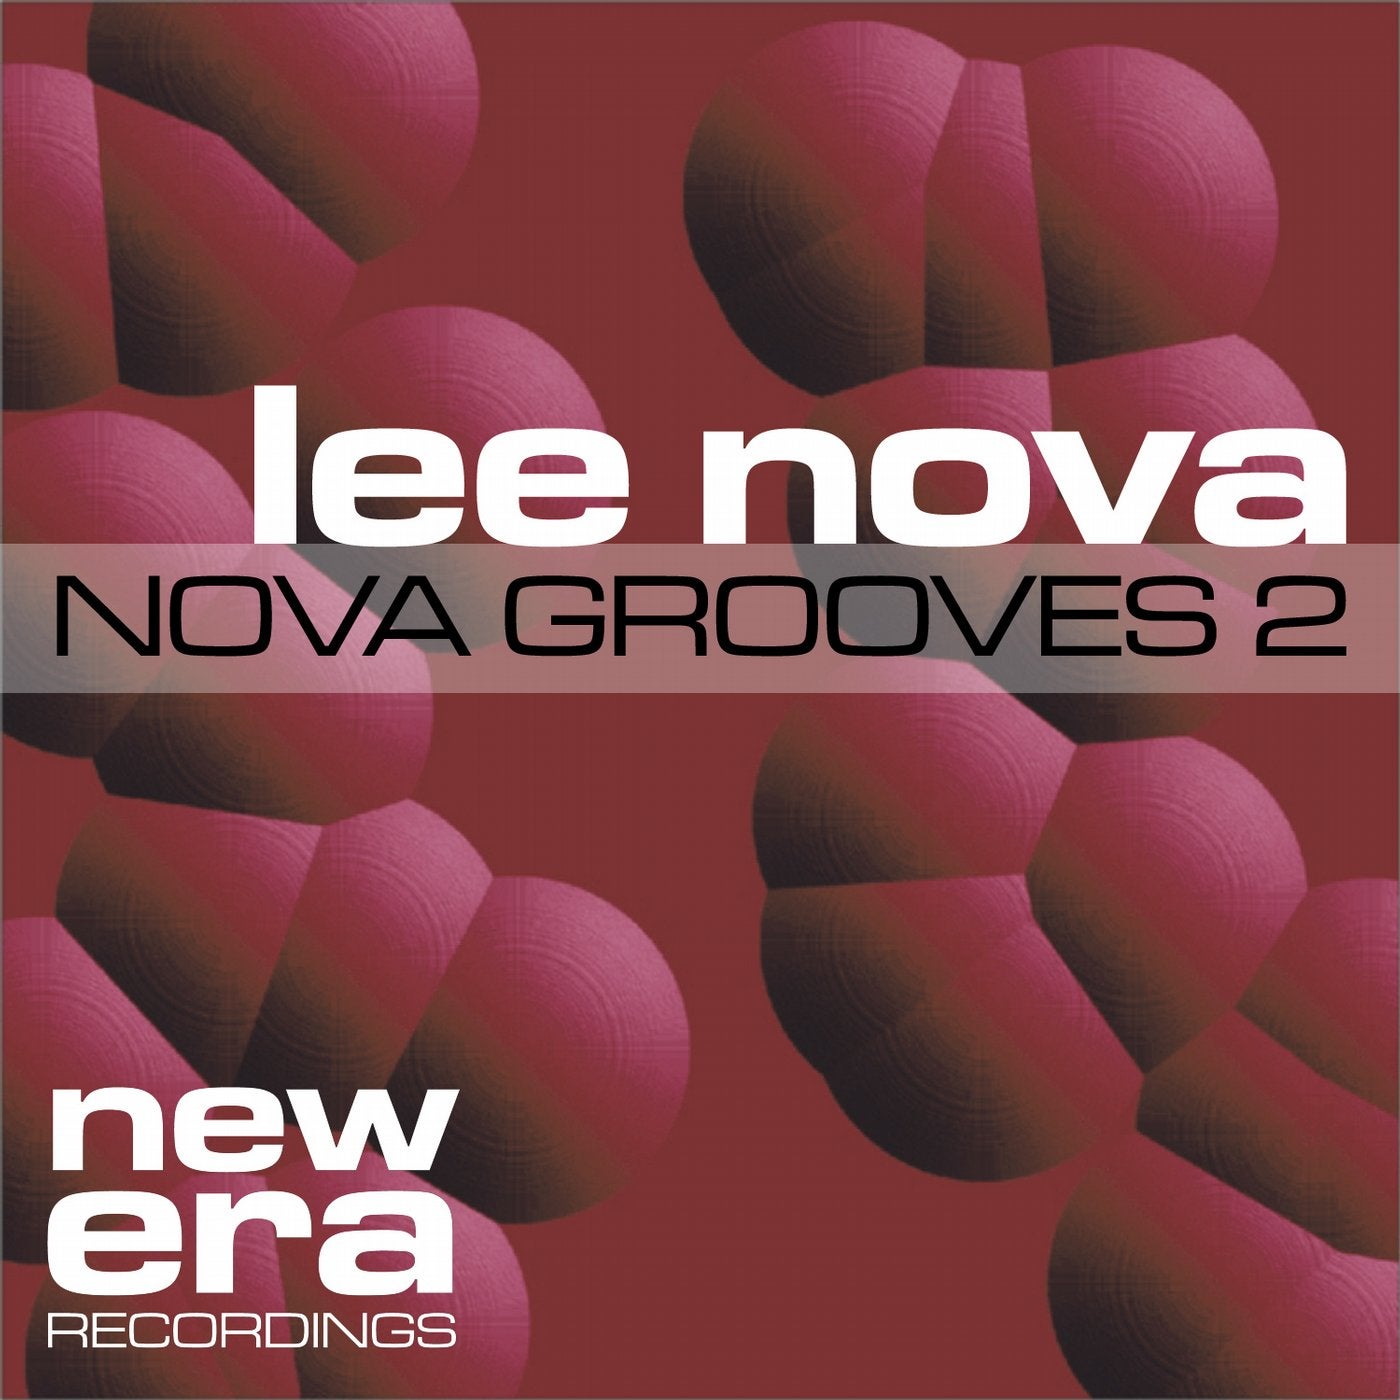 Nova Grooves 2